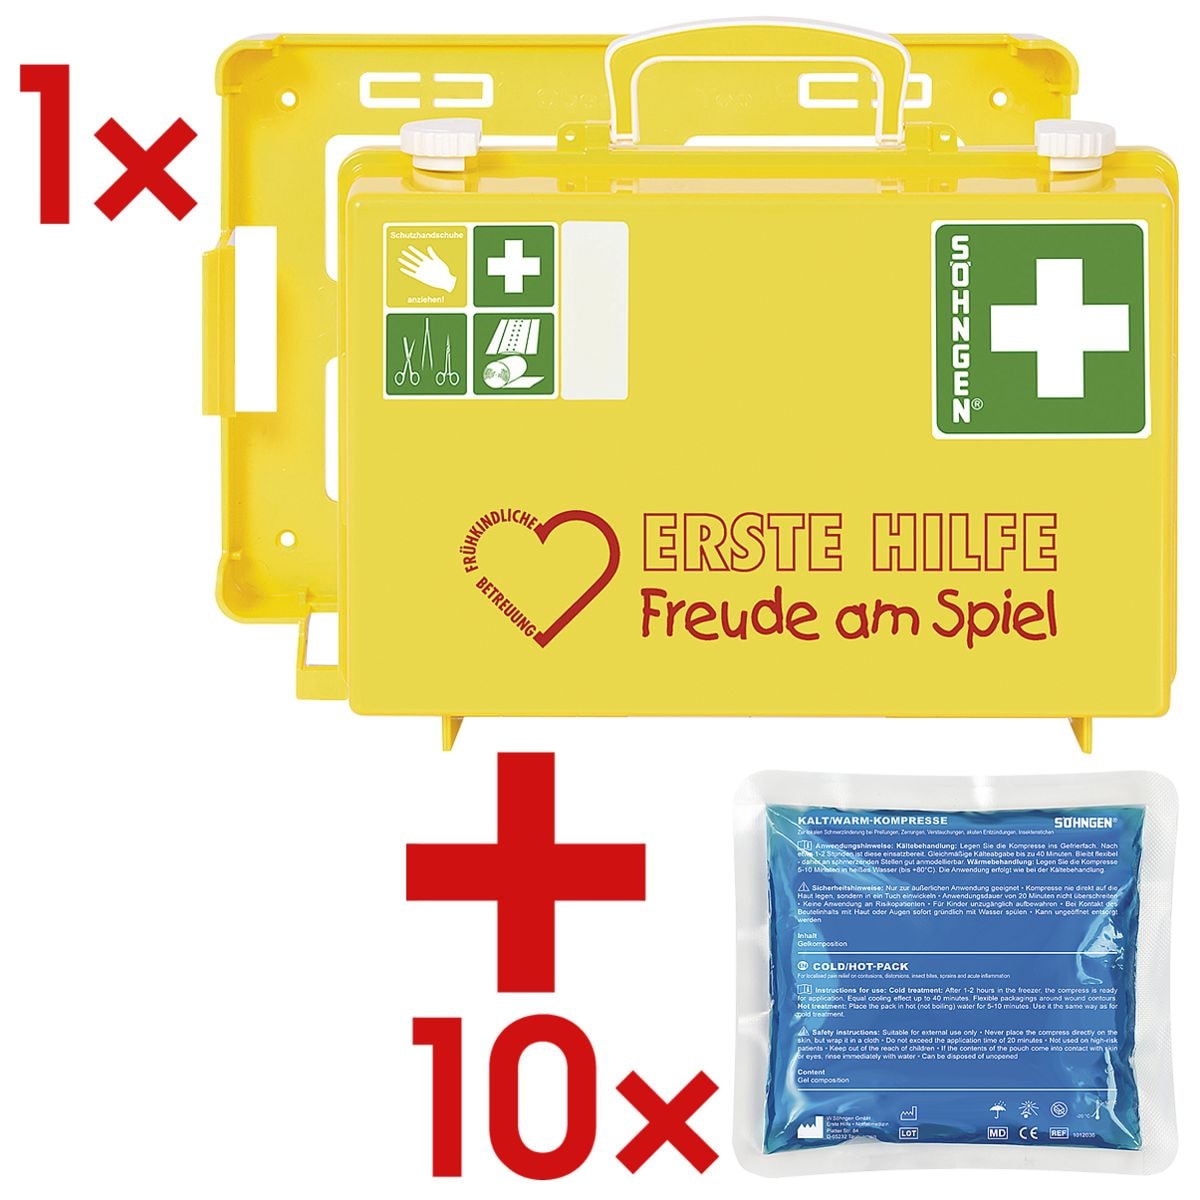 SHNGEN Erste-Hilfe-Koffer Frhkindliche Betreuung – Freude am Spiel inkl. 10 Kalt-Warm Kompressen 13x14 cm